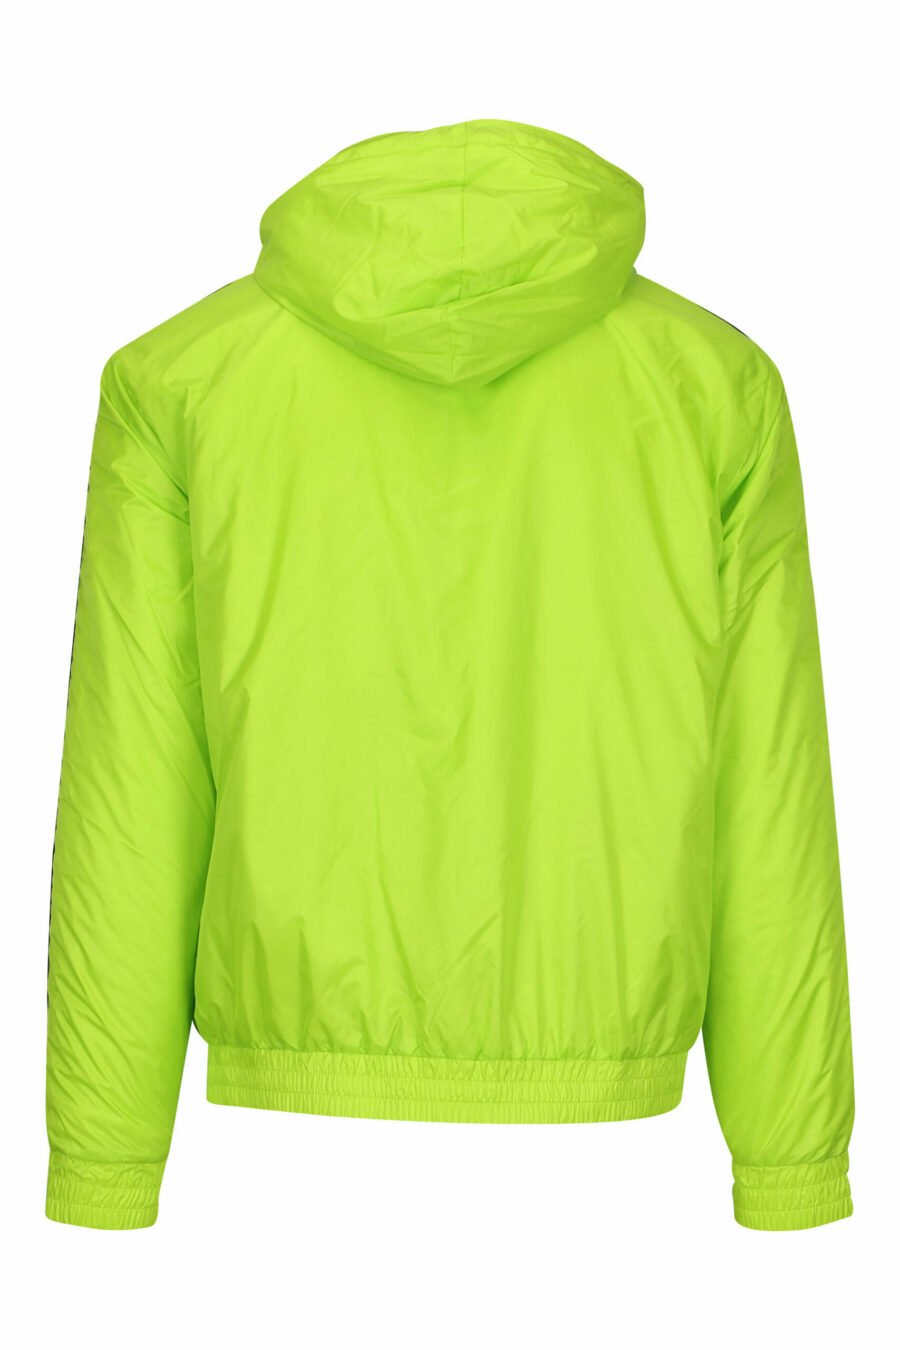 Wasserdichte lindgrüne Jacke mit Kapuze, weißen Seitenlinien und "lux identity" Logo - 8057970709060 1 skaliert